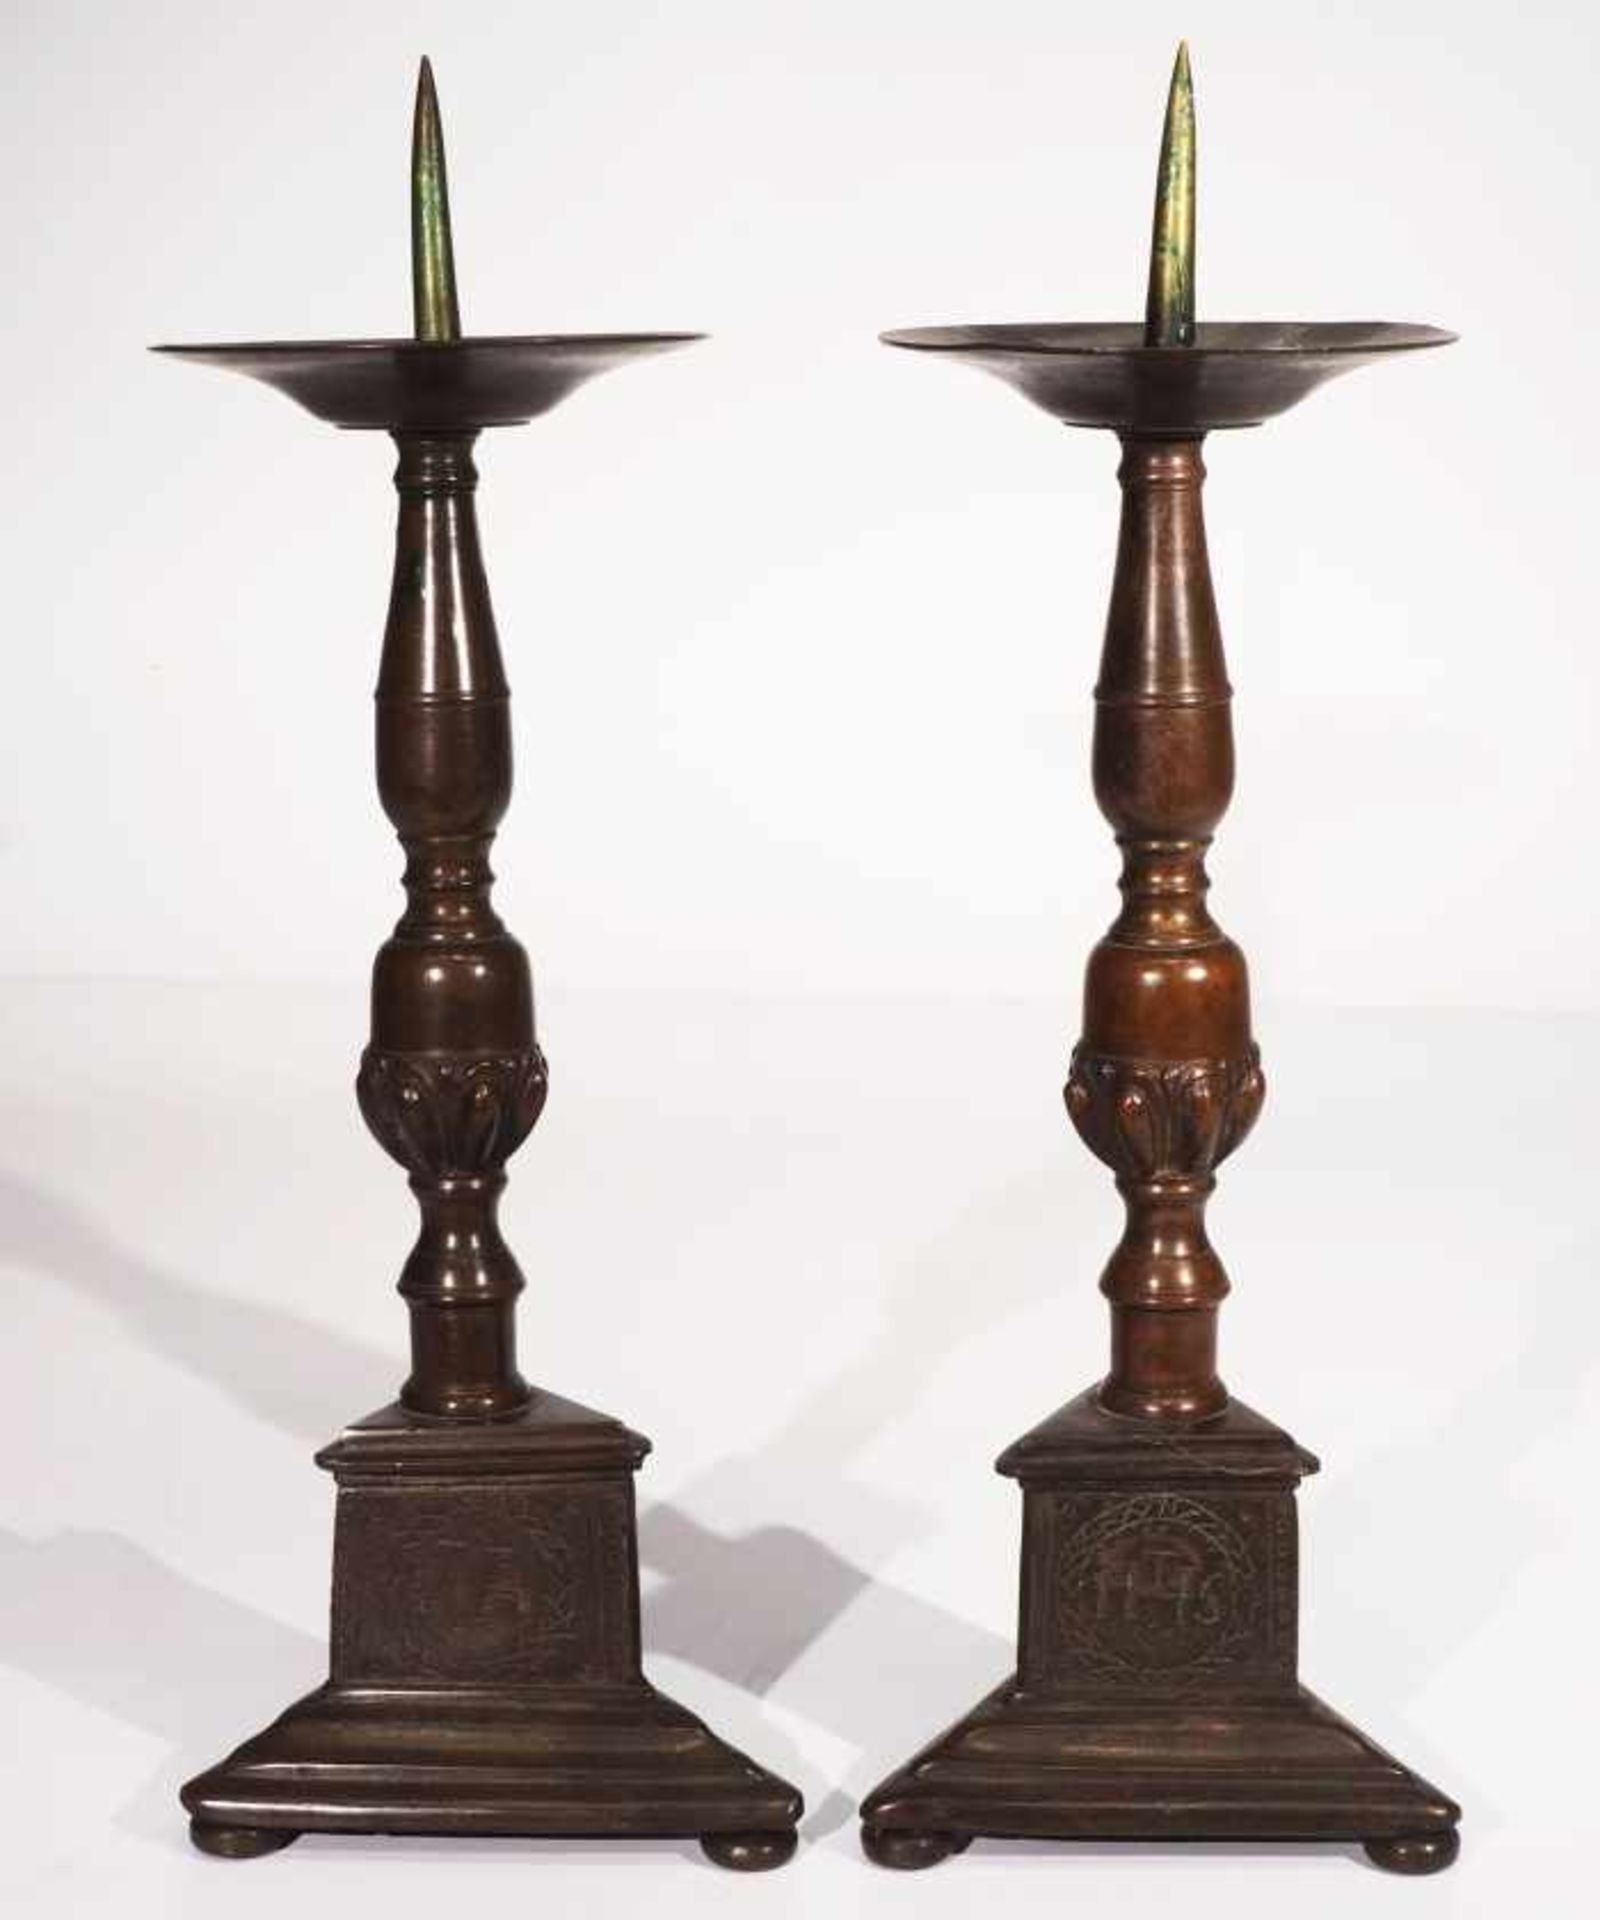 Paar Kerzenleuchter mit langem Dorn, 19. Jahrhundert. Bronze, dreipassiger Stand allseits mit